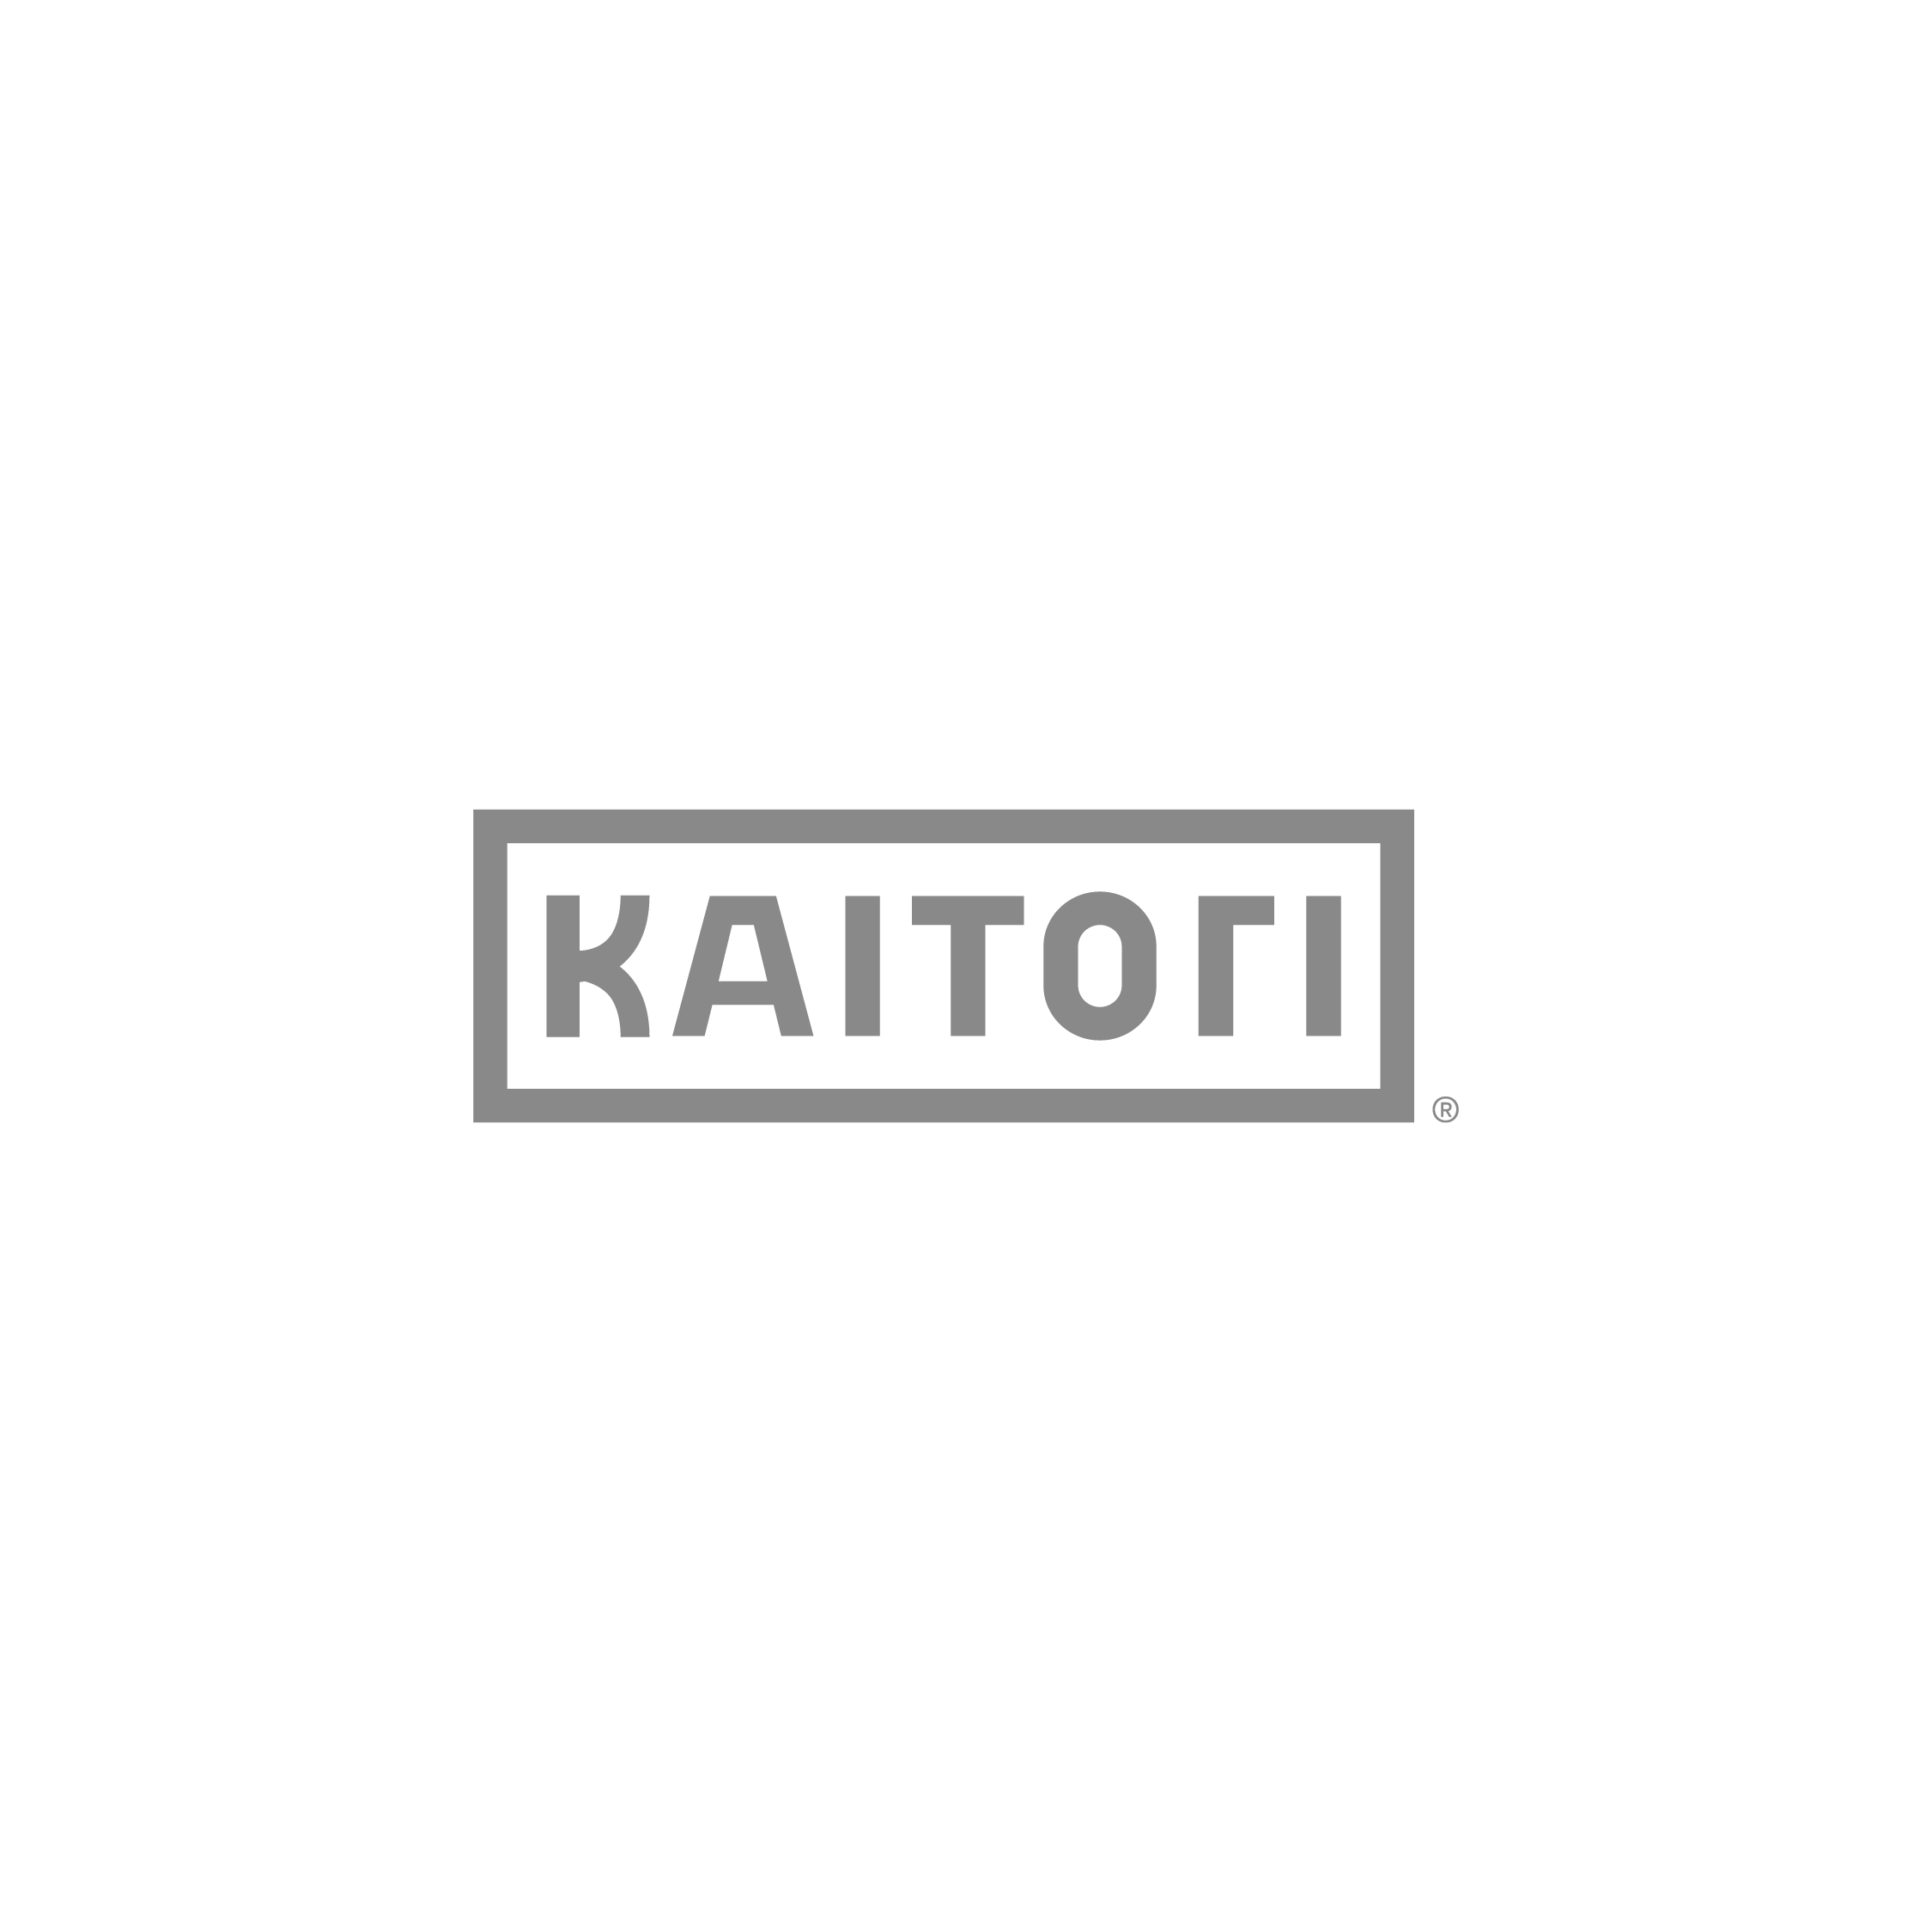 Kaitori Logo-01